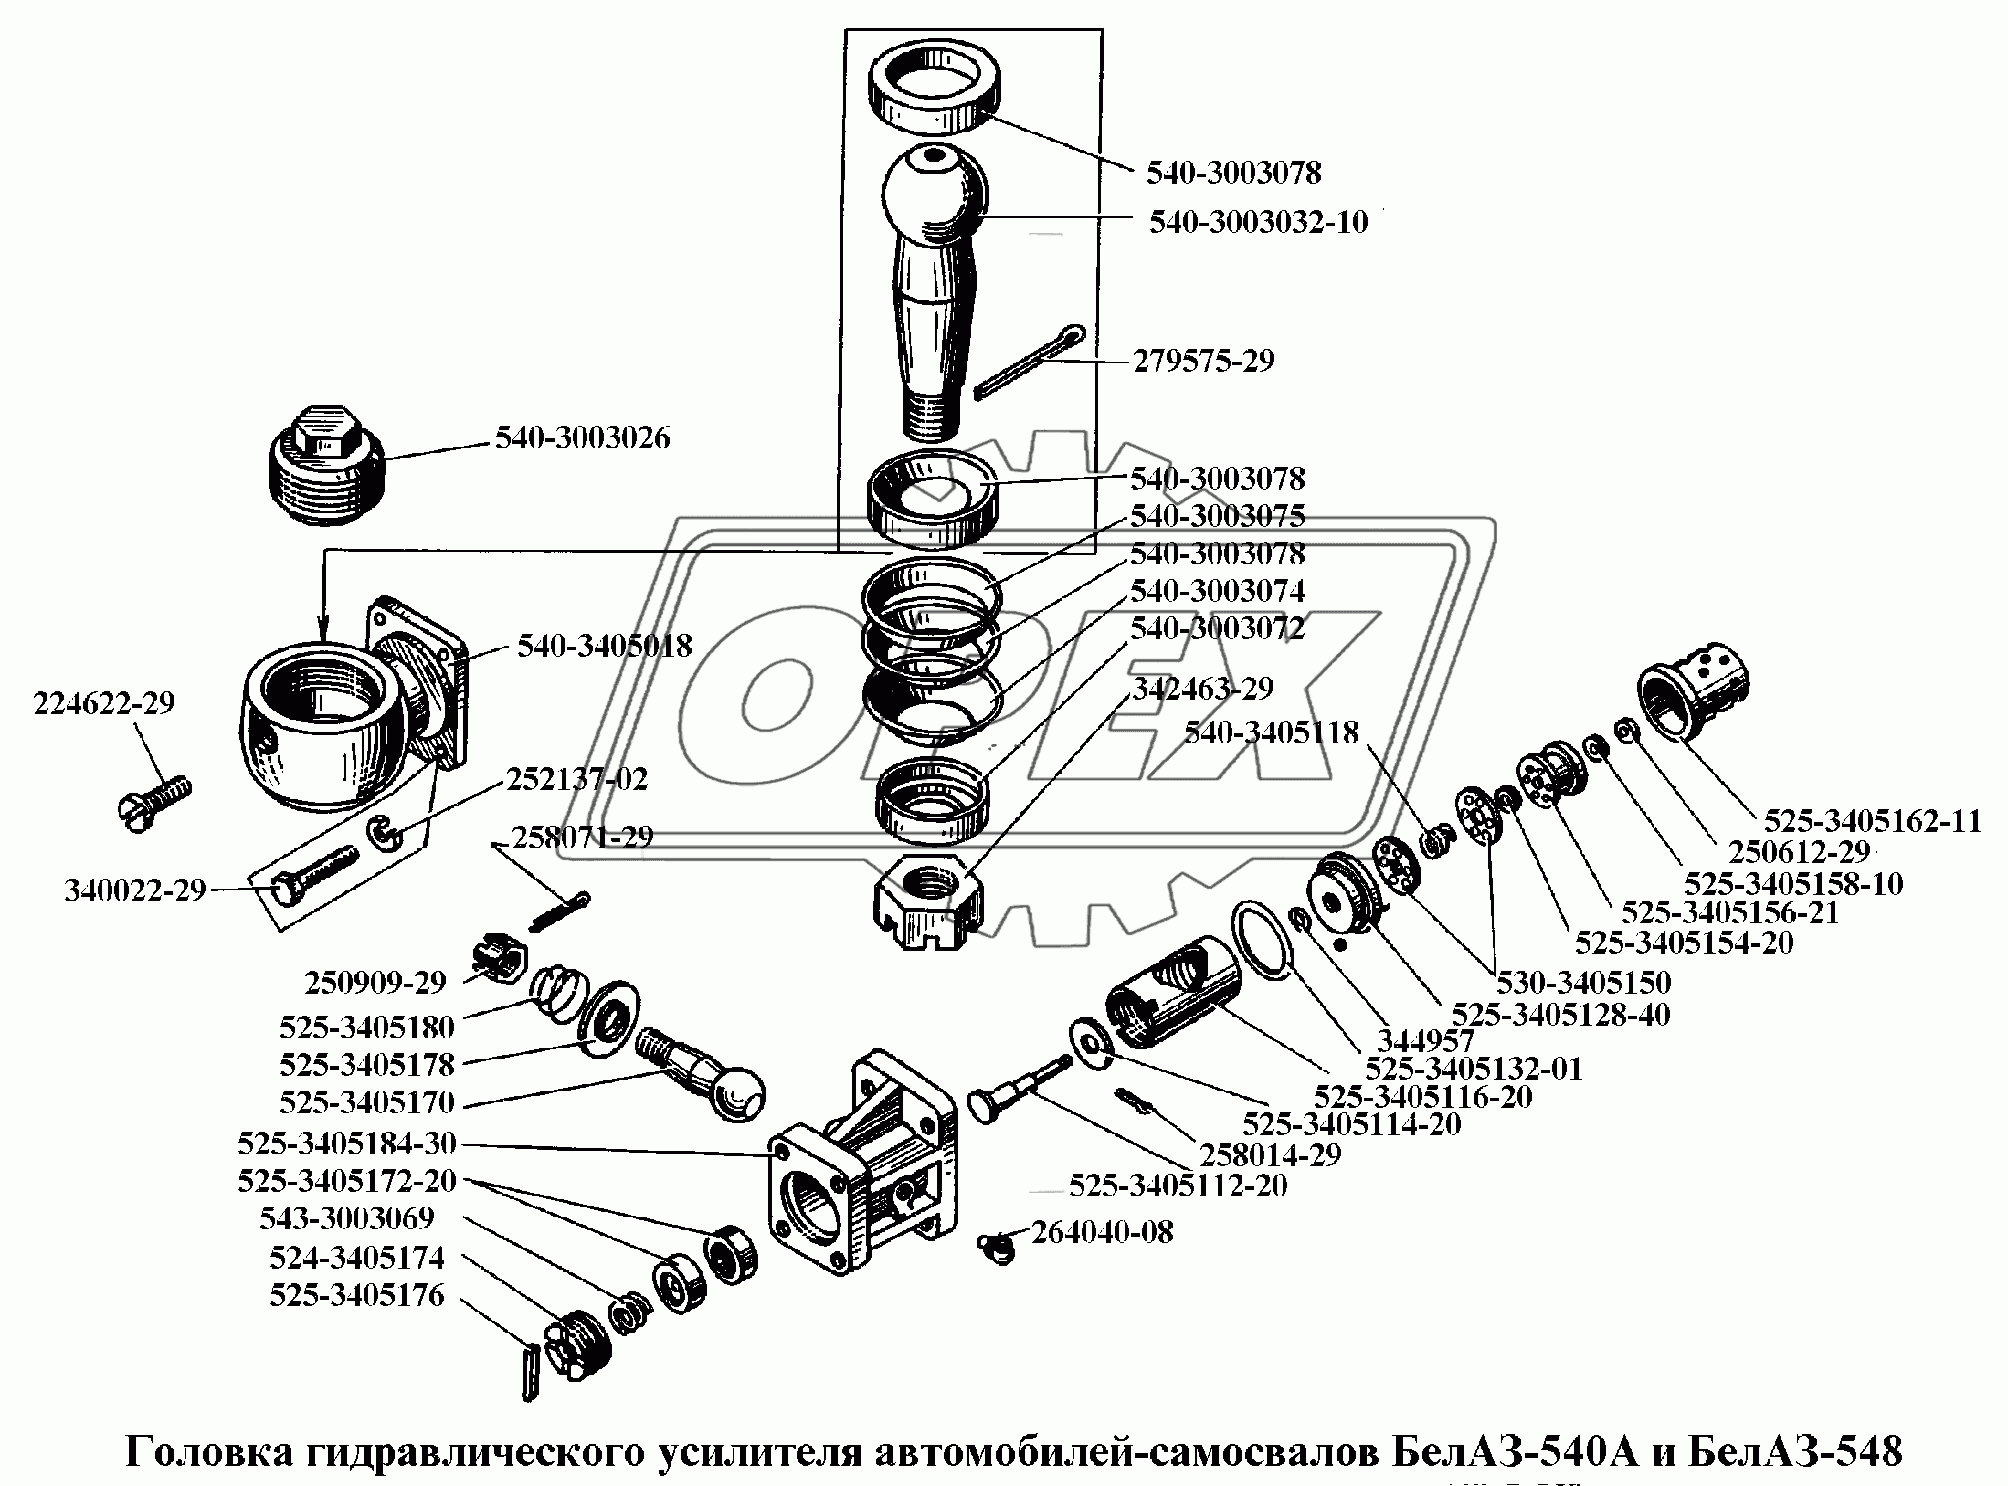 Головка гидравлического усилителя автомобилей-самосвалов БелАЗ-540А и БелАЗ-548А